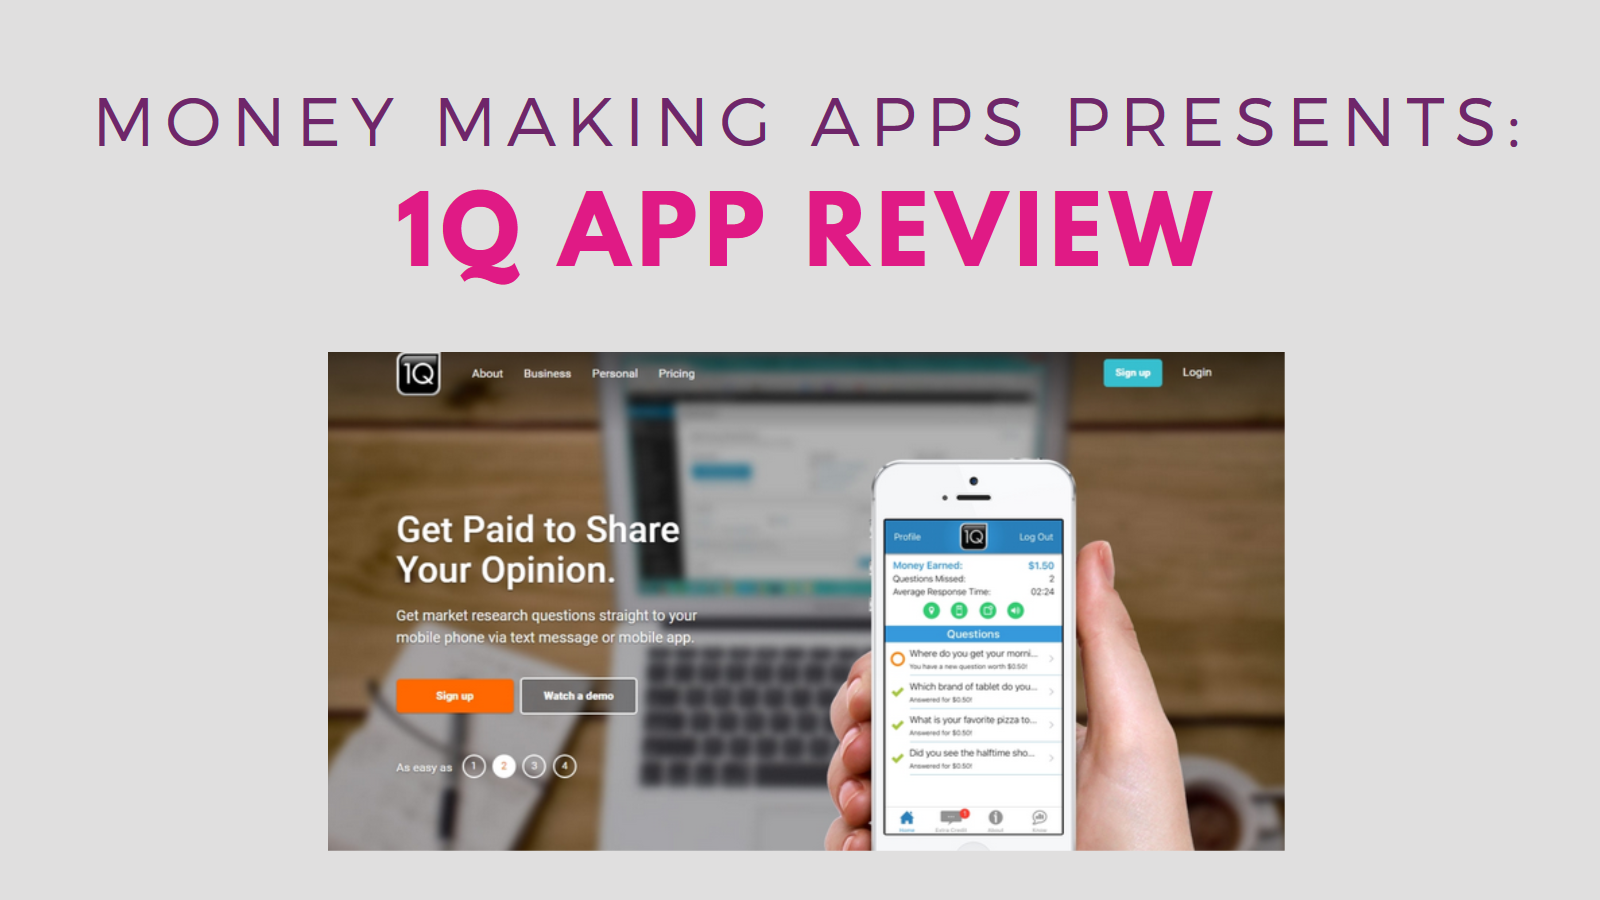 1q mobile app review, 1q app, 1q app legit, making money with 1q app, 1q make money, 1q app scam, 1q app real, 1q, 1q app